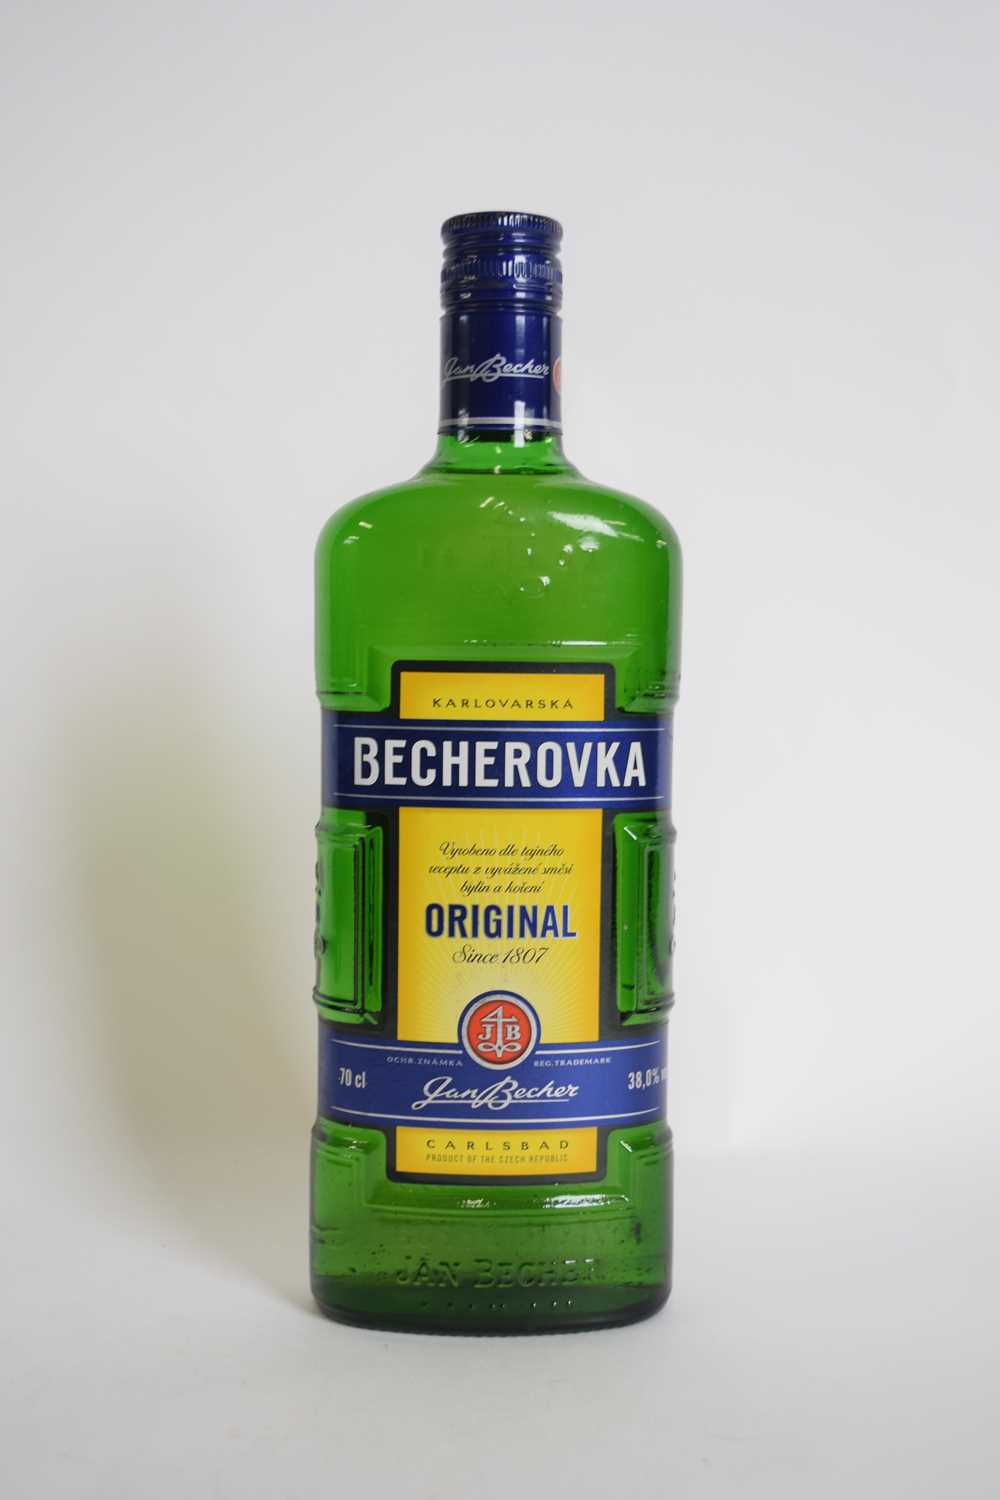 Karloarska Becherovka, 1 bottle - Image 3 of 3